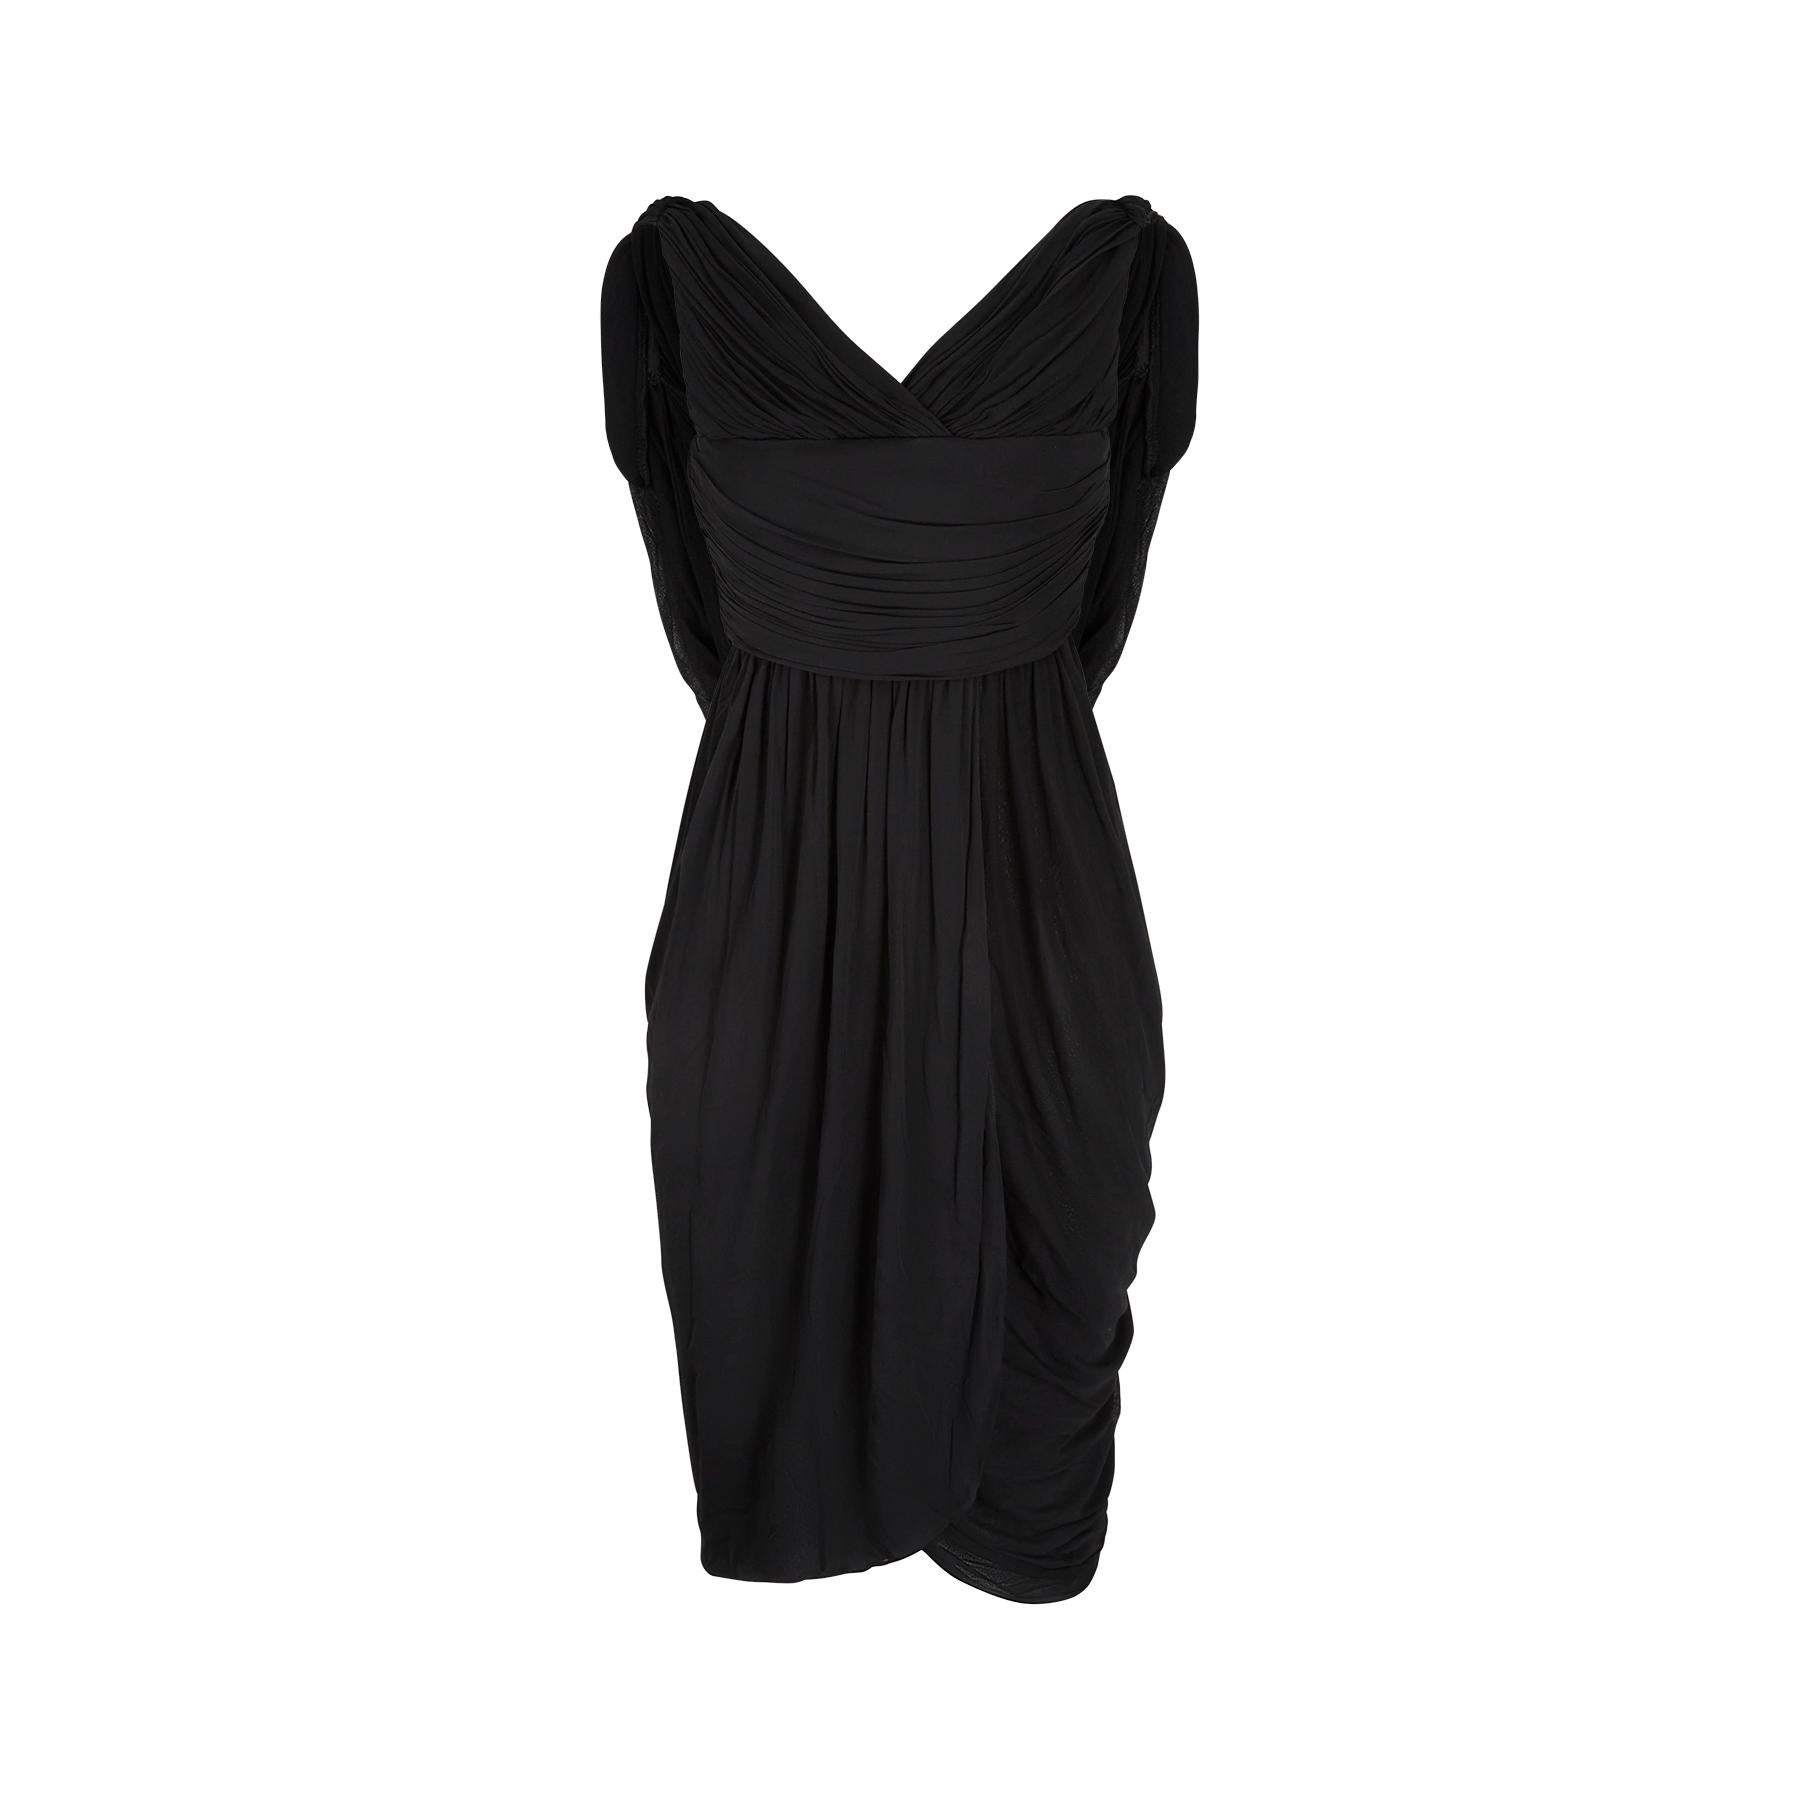 Une robe de déesse Halston black label couture des années 1970 absolument superbe et à collectionner. Halston s'est clairement inspirée d'une époque antérieure et on retrouve ici des éléments de la mode des années 1940 et 1950. Il est impeccablement